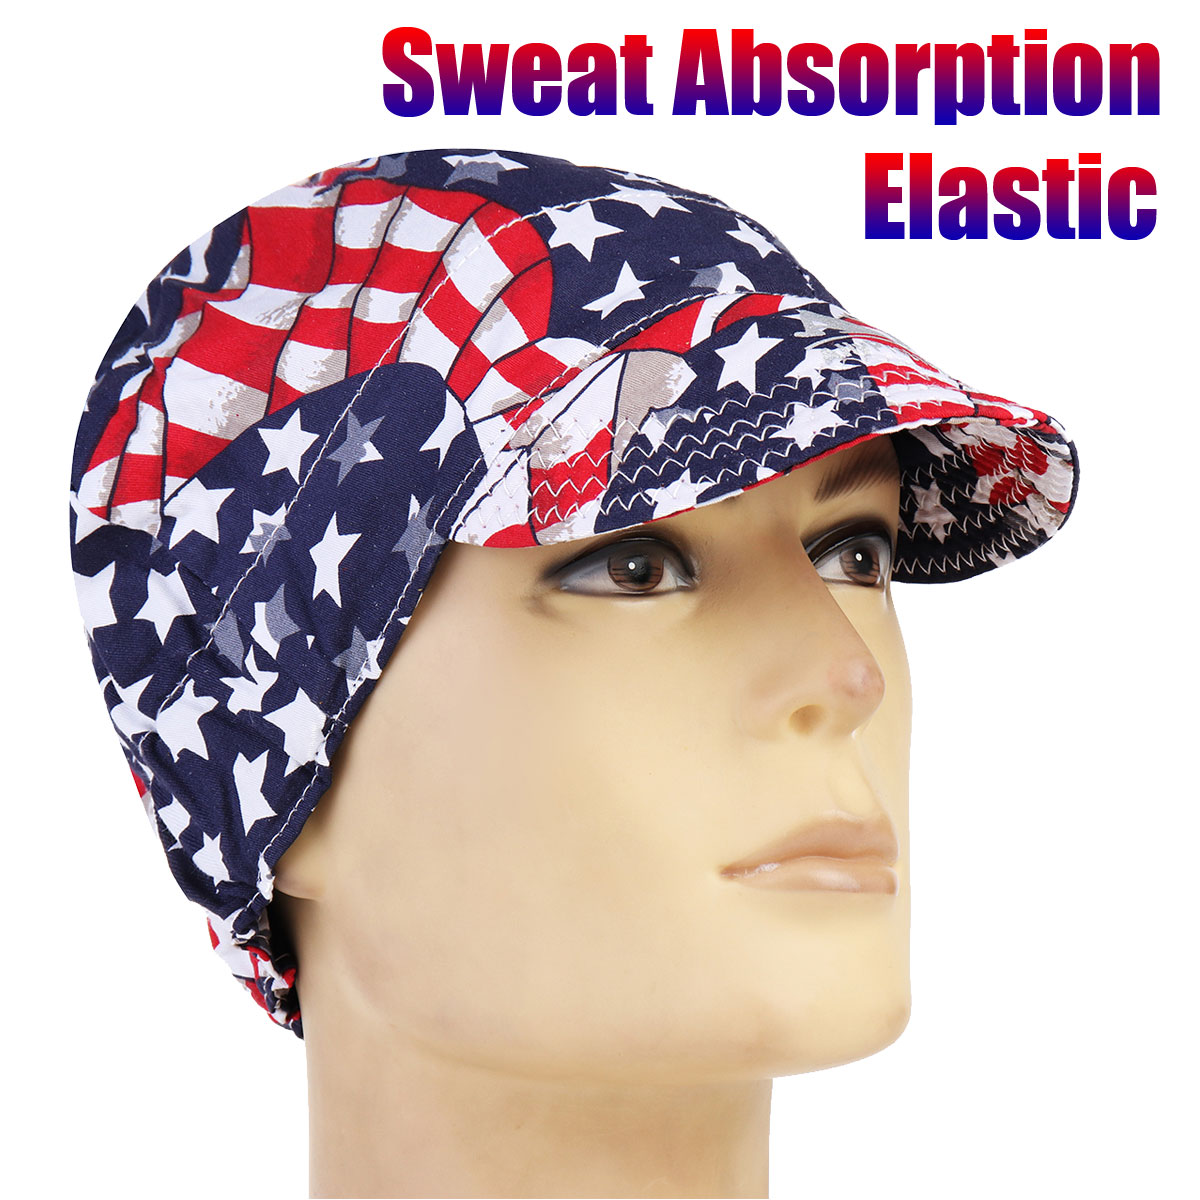 Welding-Cap-Protective-Cotton-Hat-Cap-Welding-Helmet-Hood-Tool-Sweat-Absorption-1321885-1